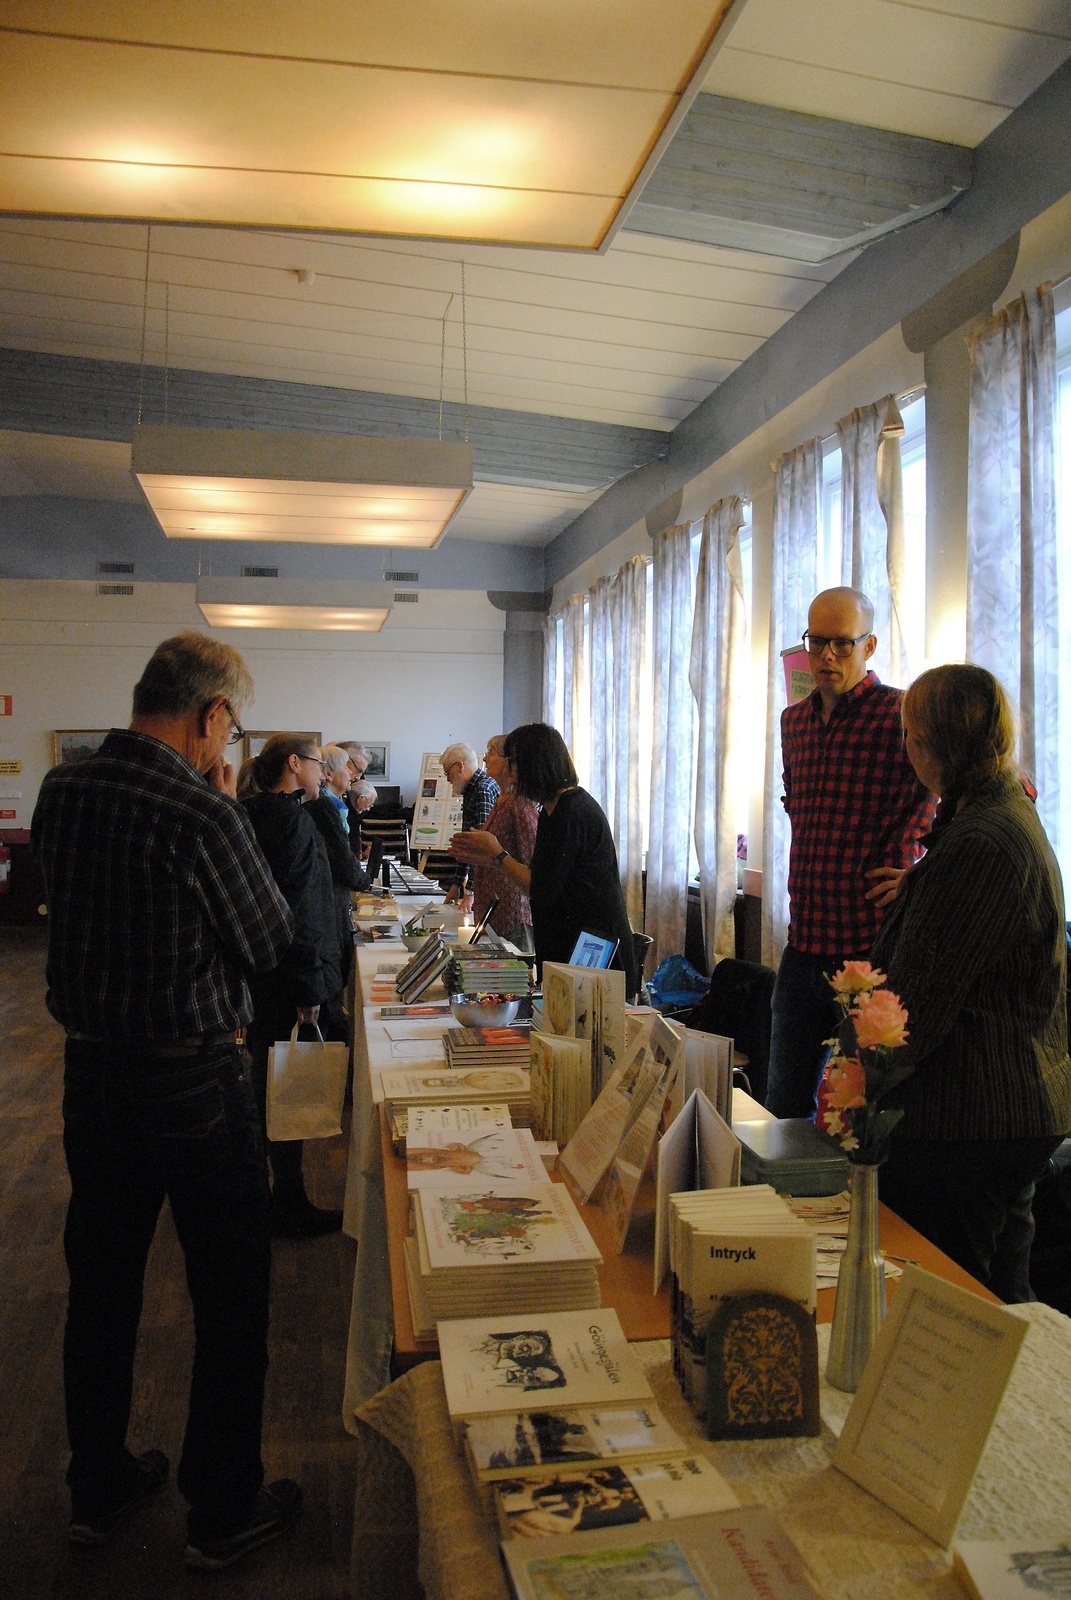 Totalt deltog 17 författare på Osby bokmässa. FOTO: SUSANNE GÄRE